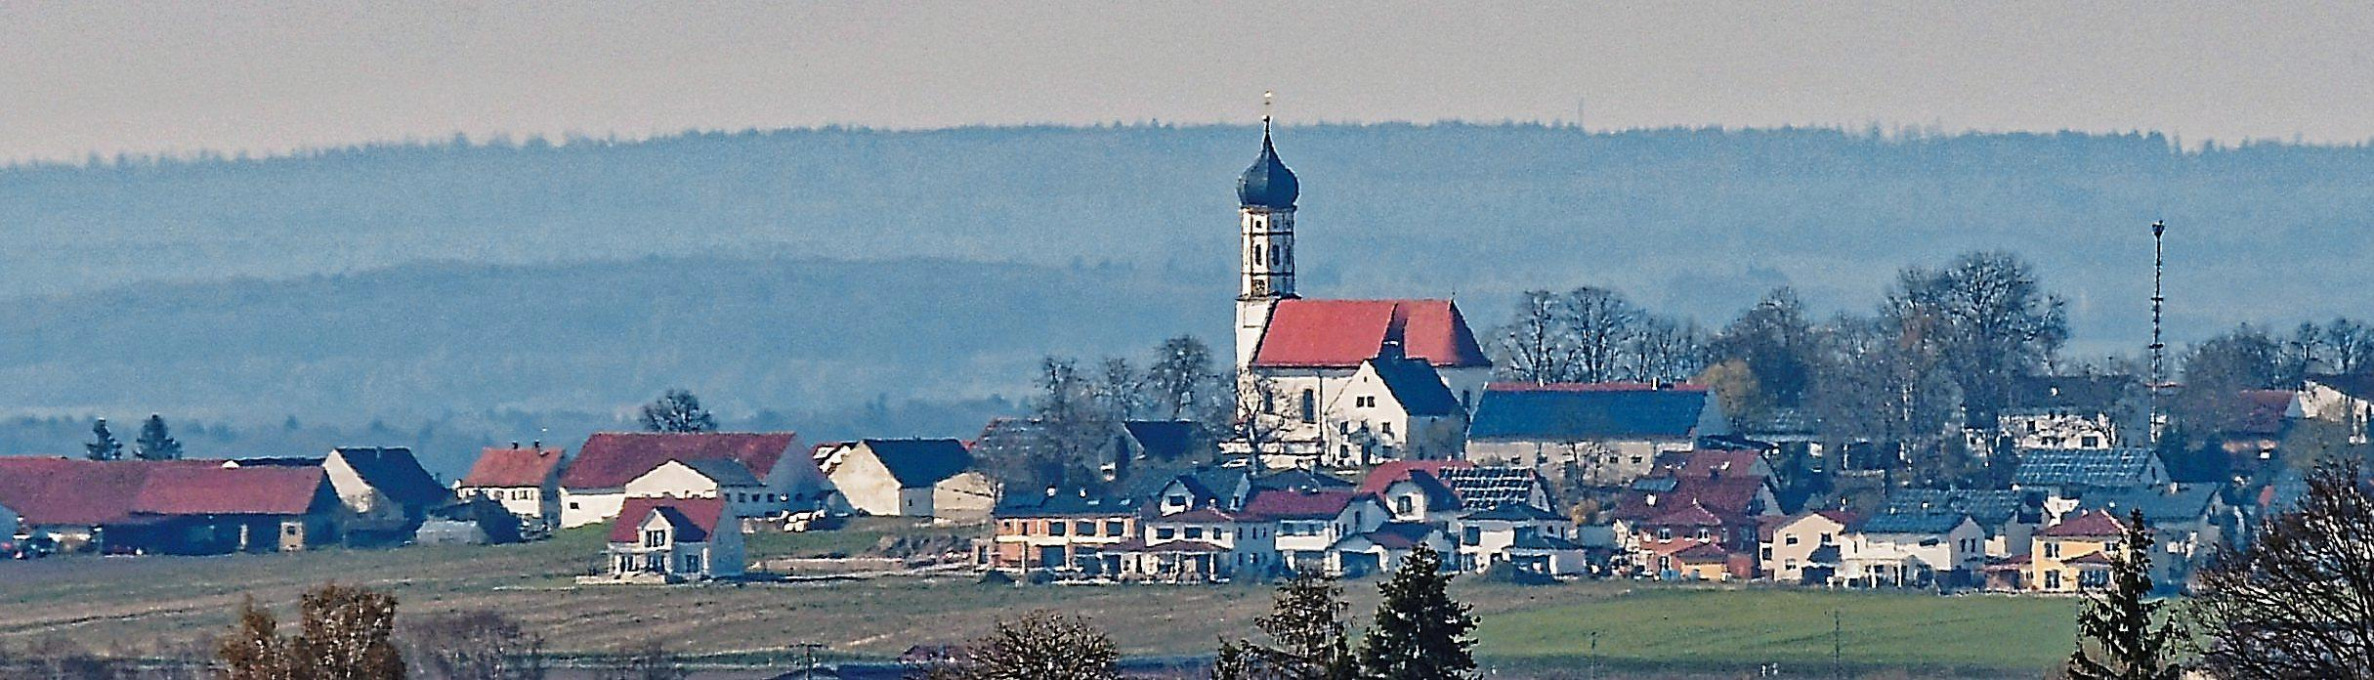 Von weit her sichtbar ist der Turm der Berg im Gauer Pfarrkirche Mariä Heimsuchung mit seiner markanten Zwiebelhaube. Er ist das Wahrzeichen der kleinsten Gemeinde des Landkreises. Foto: M. Schalk